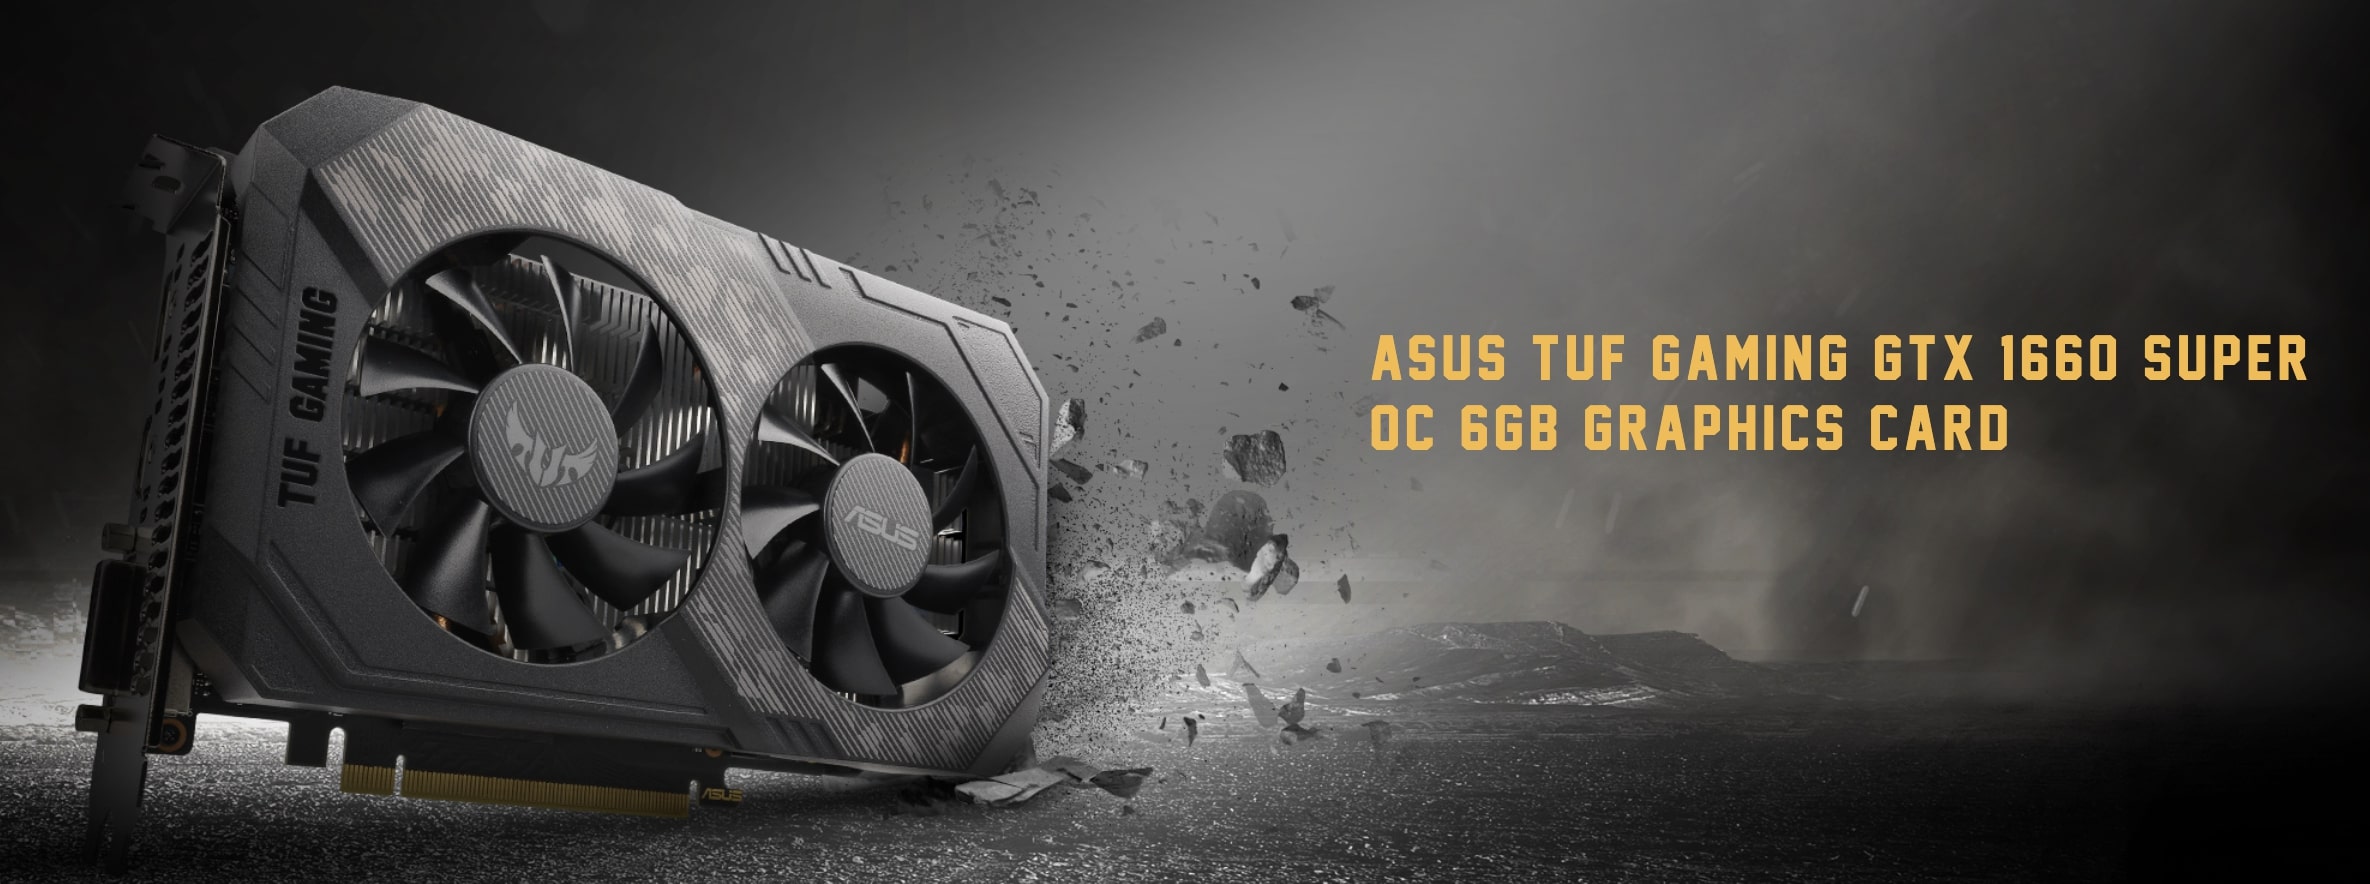 Asus Tuf Gaming GTX 1660 Super OC 6GB